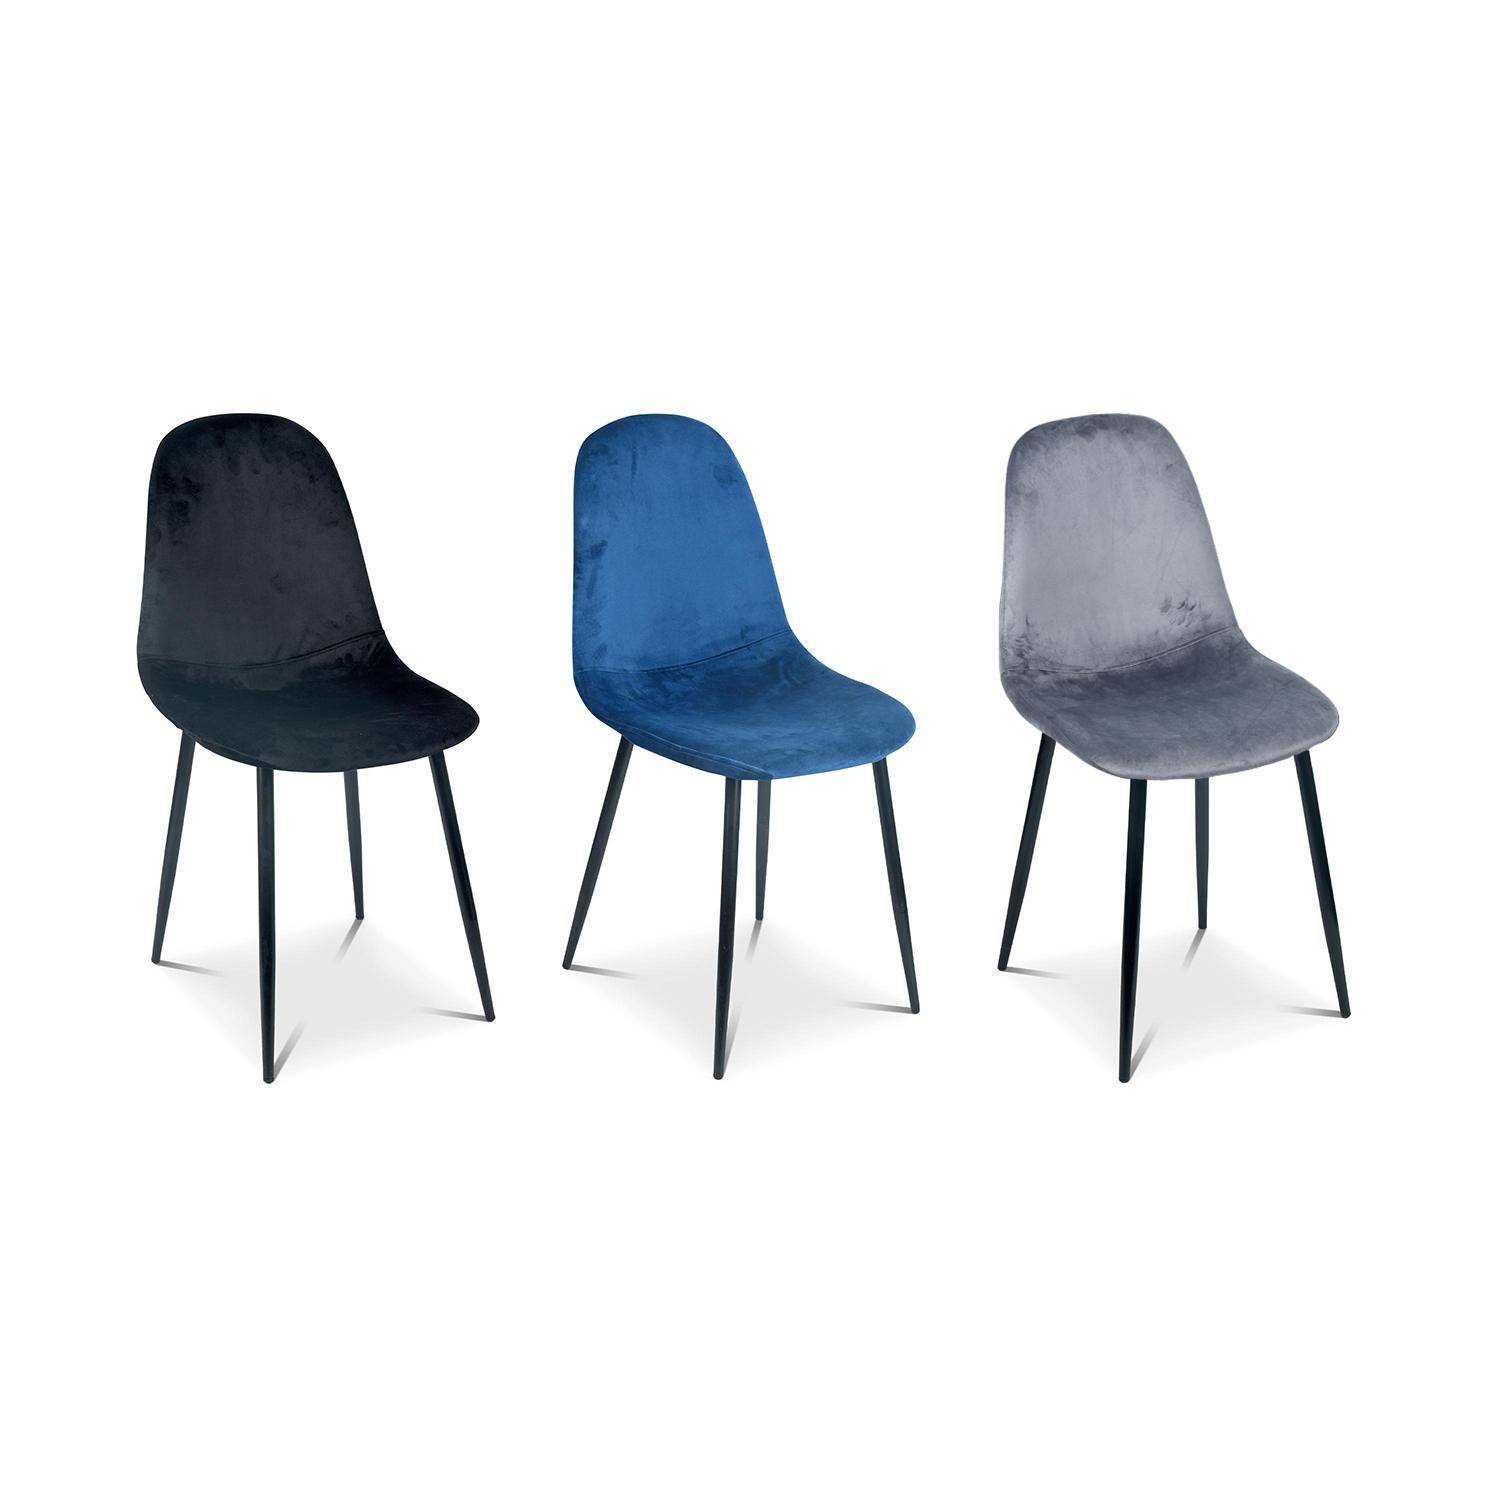 Set van 4 stoelen - Bombay - velours stoelen, metalen poten, vintage, comfortabel, design, stalen onderstel, B44xD53 x H88cmn - Donkergrijs Photo7